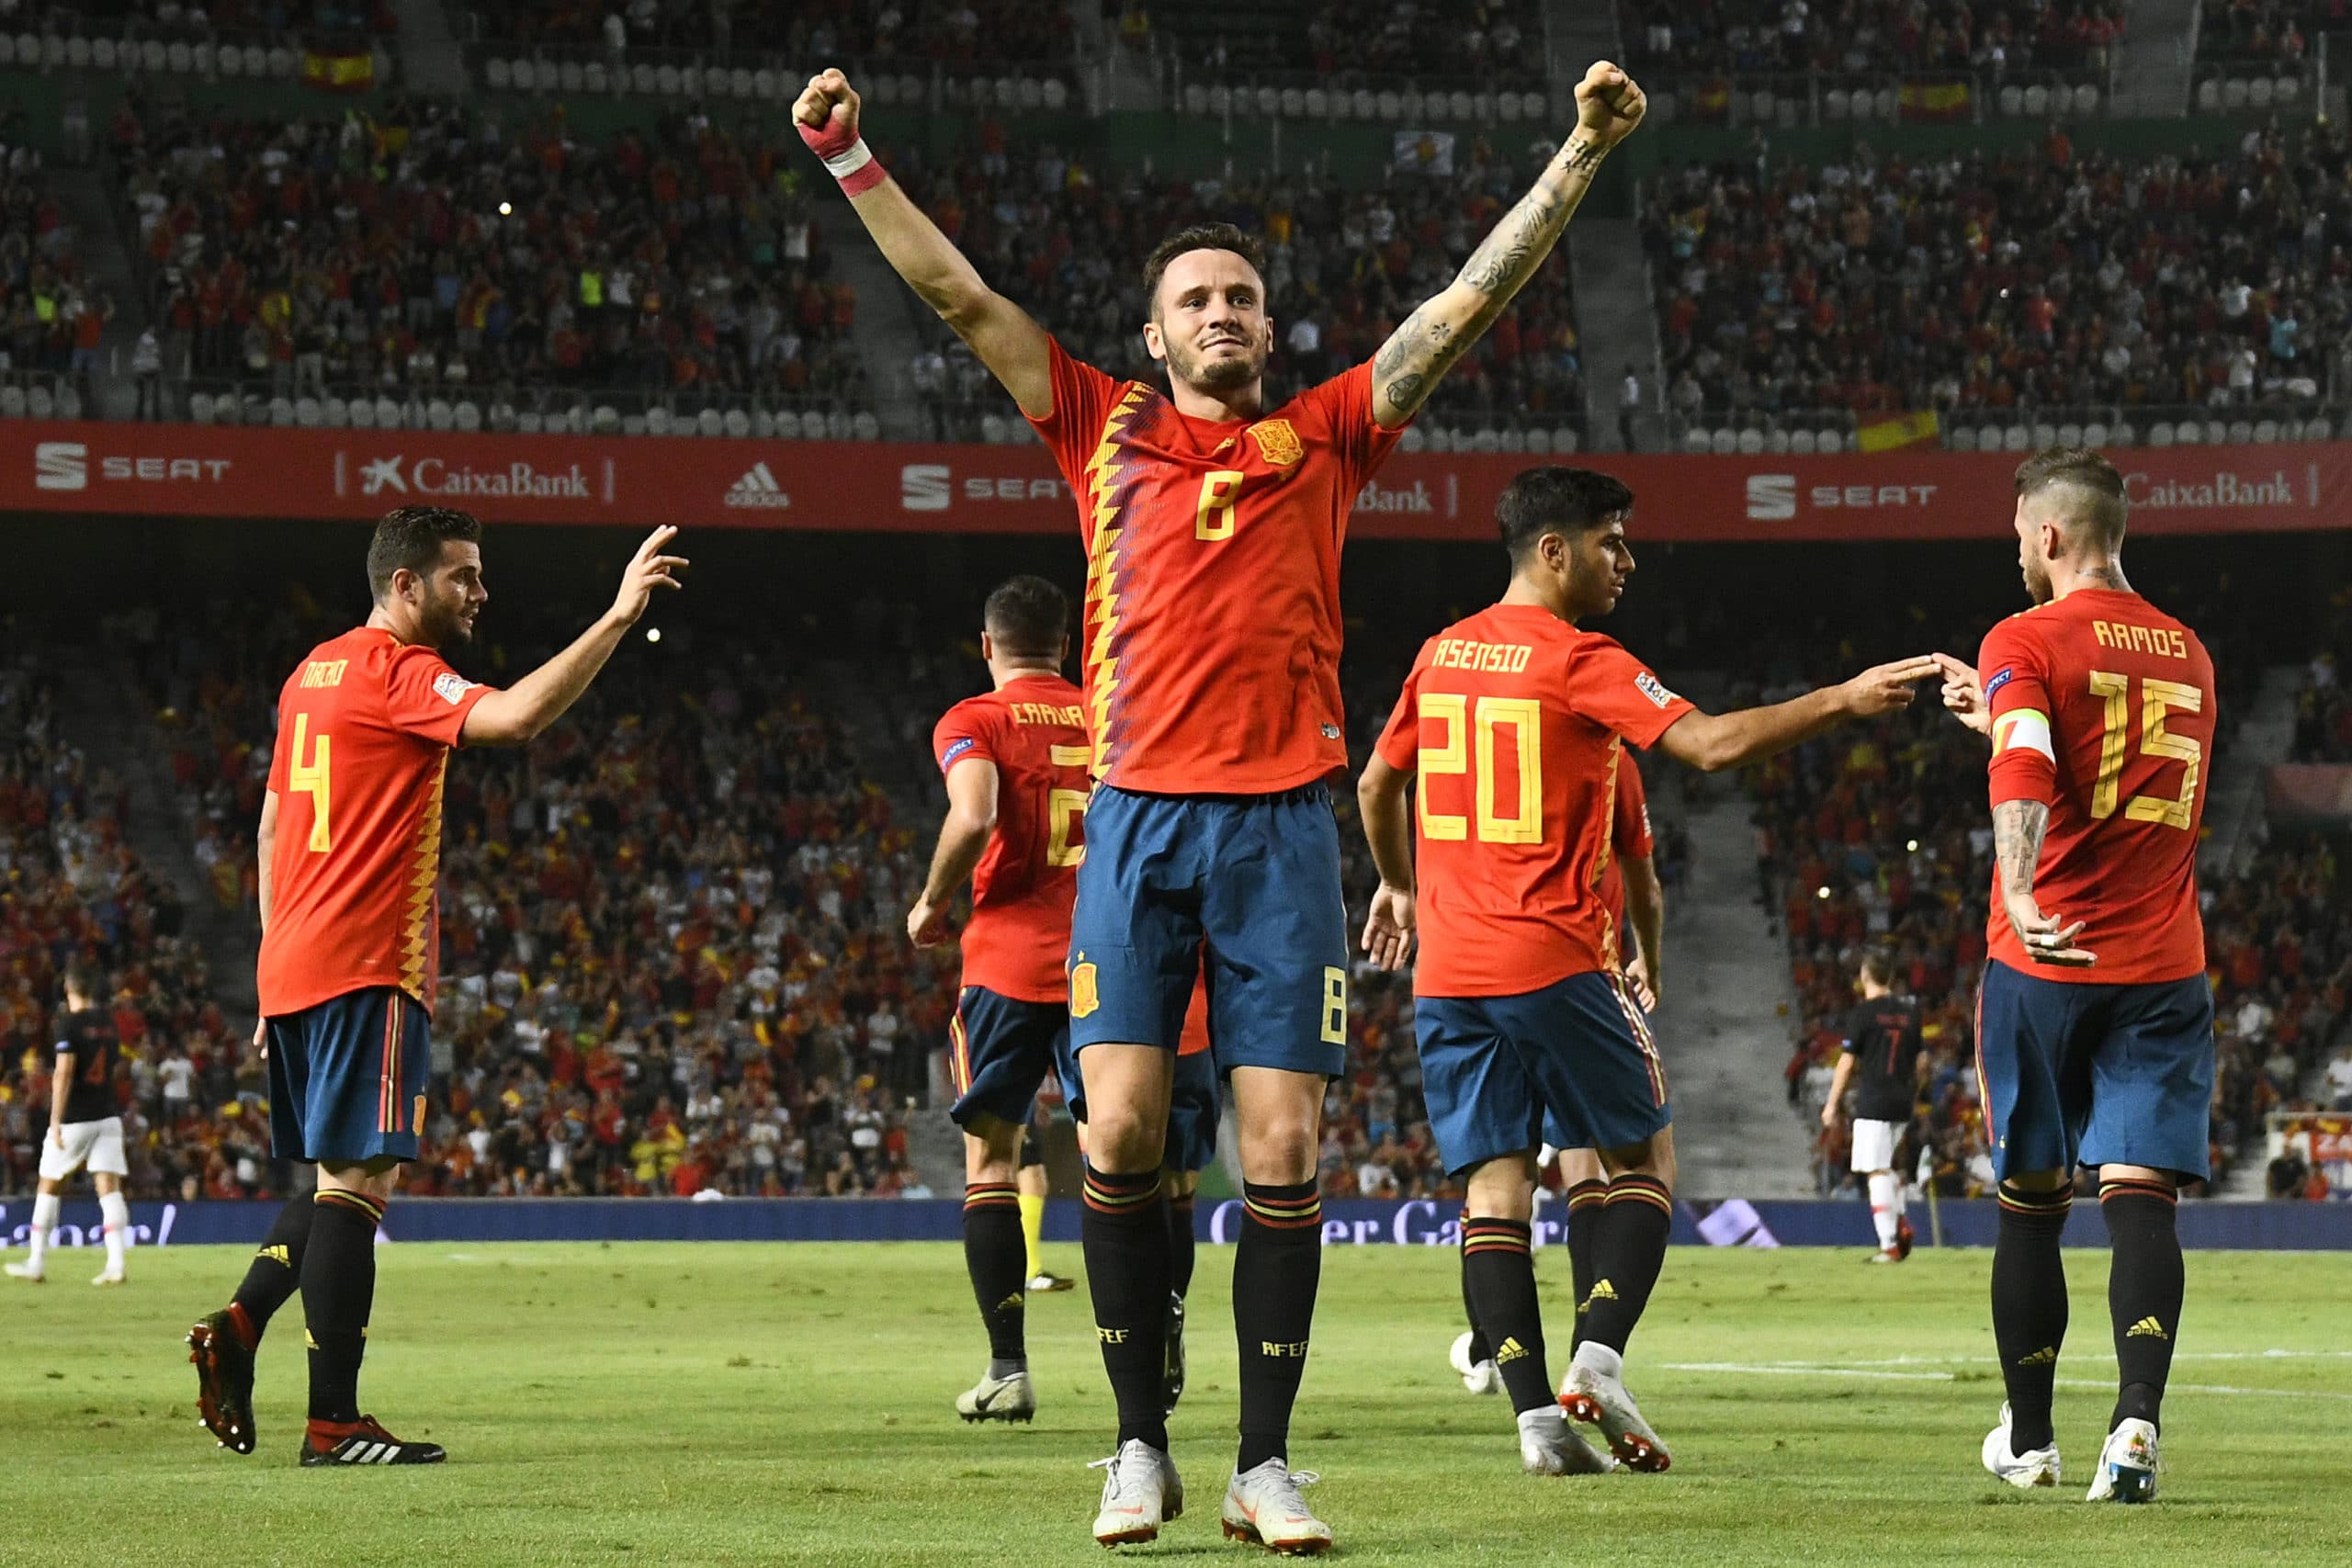 Fußball heute am 8.6. Ergebnisse – Alle Länderspiele, Wer spielt heute? Corona Probleme bei Spanien